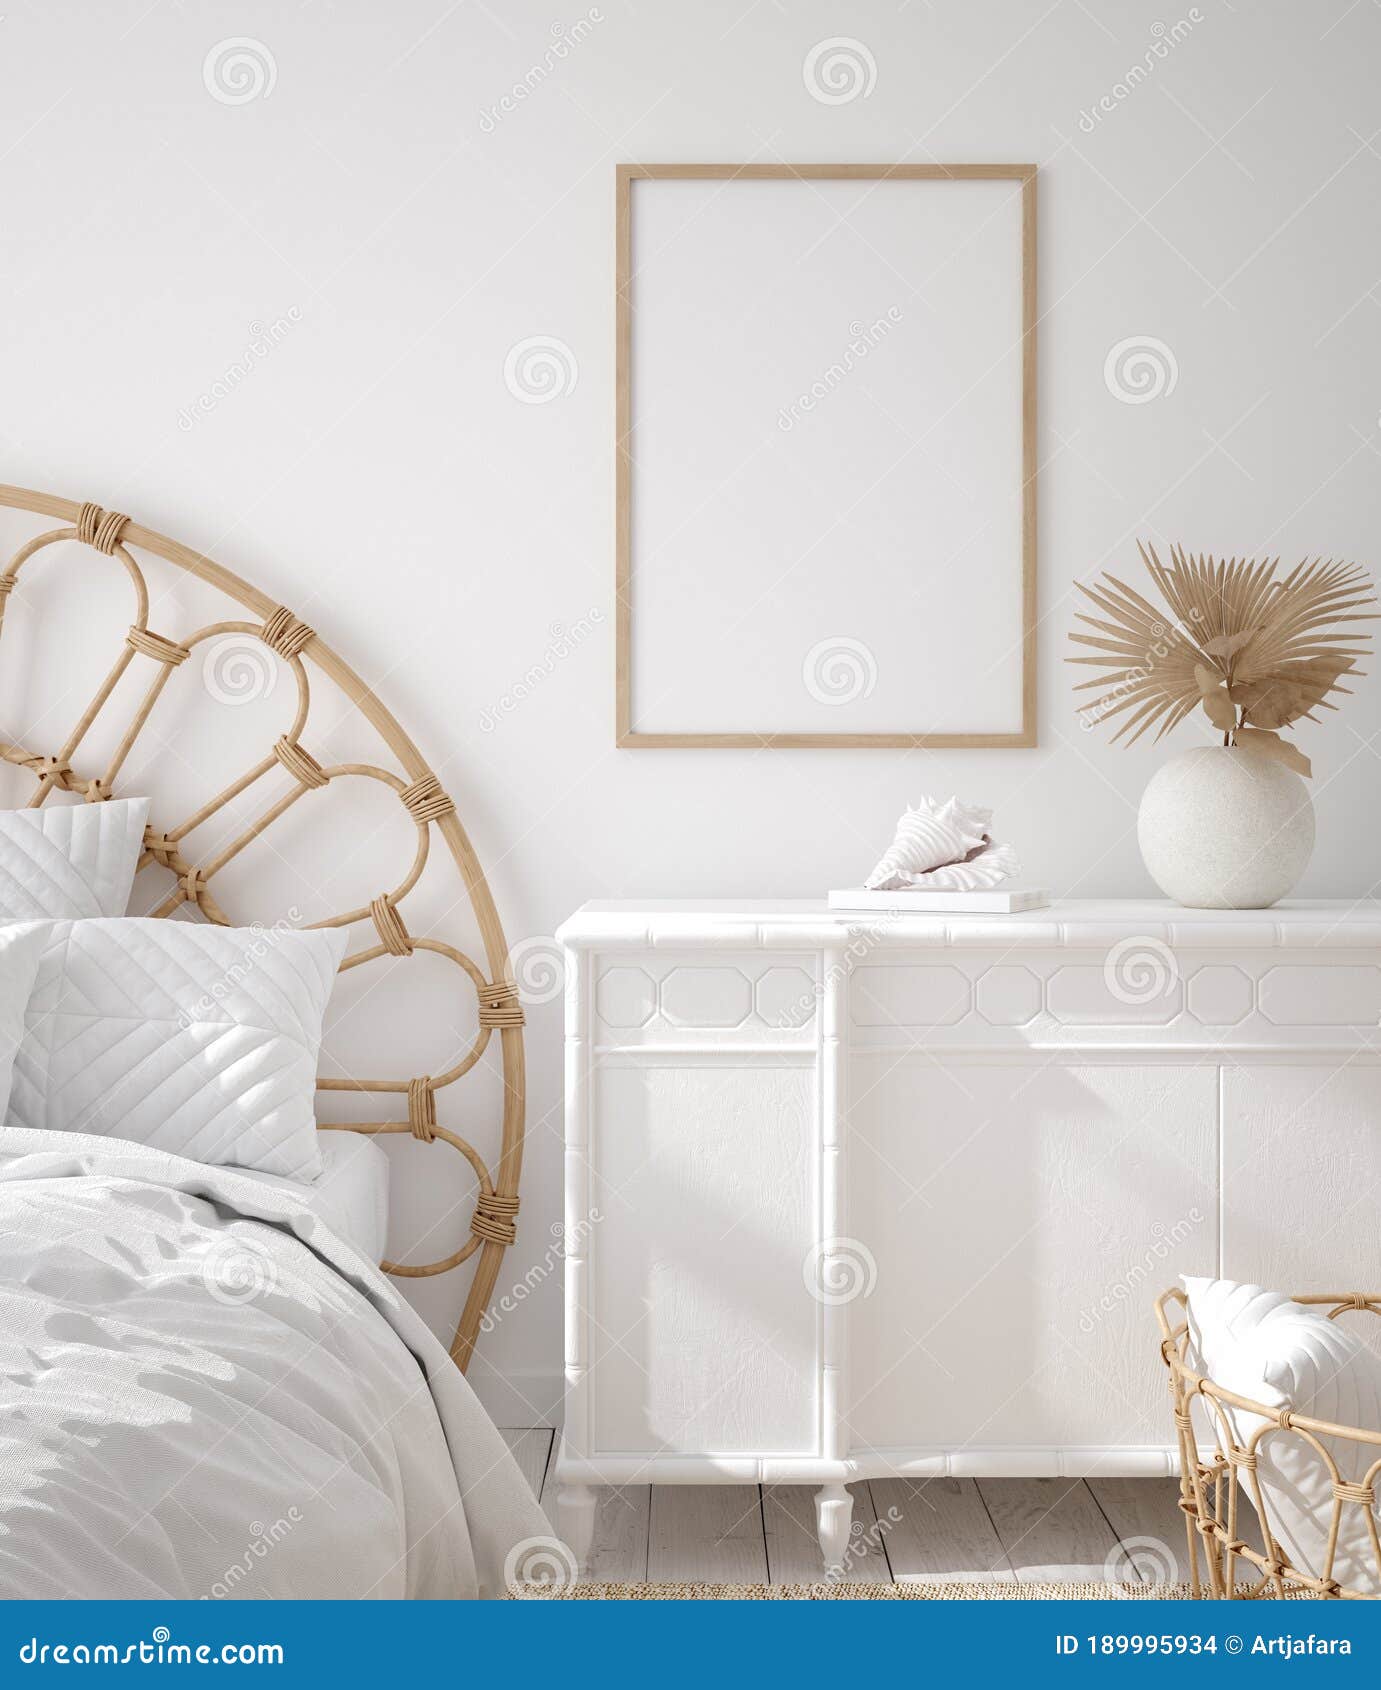 mockup frame in coastal boho style bedroom interior